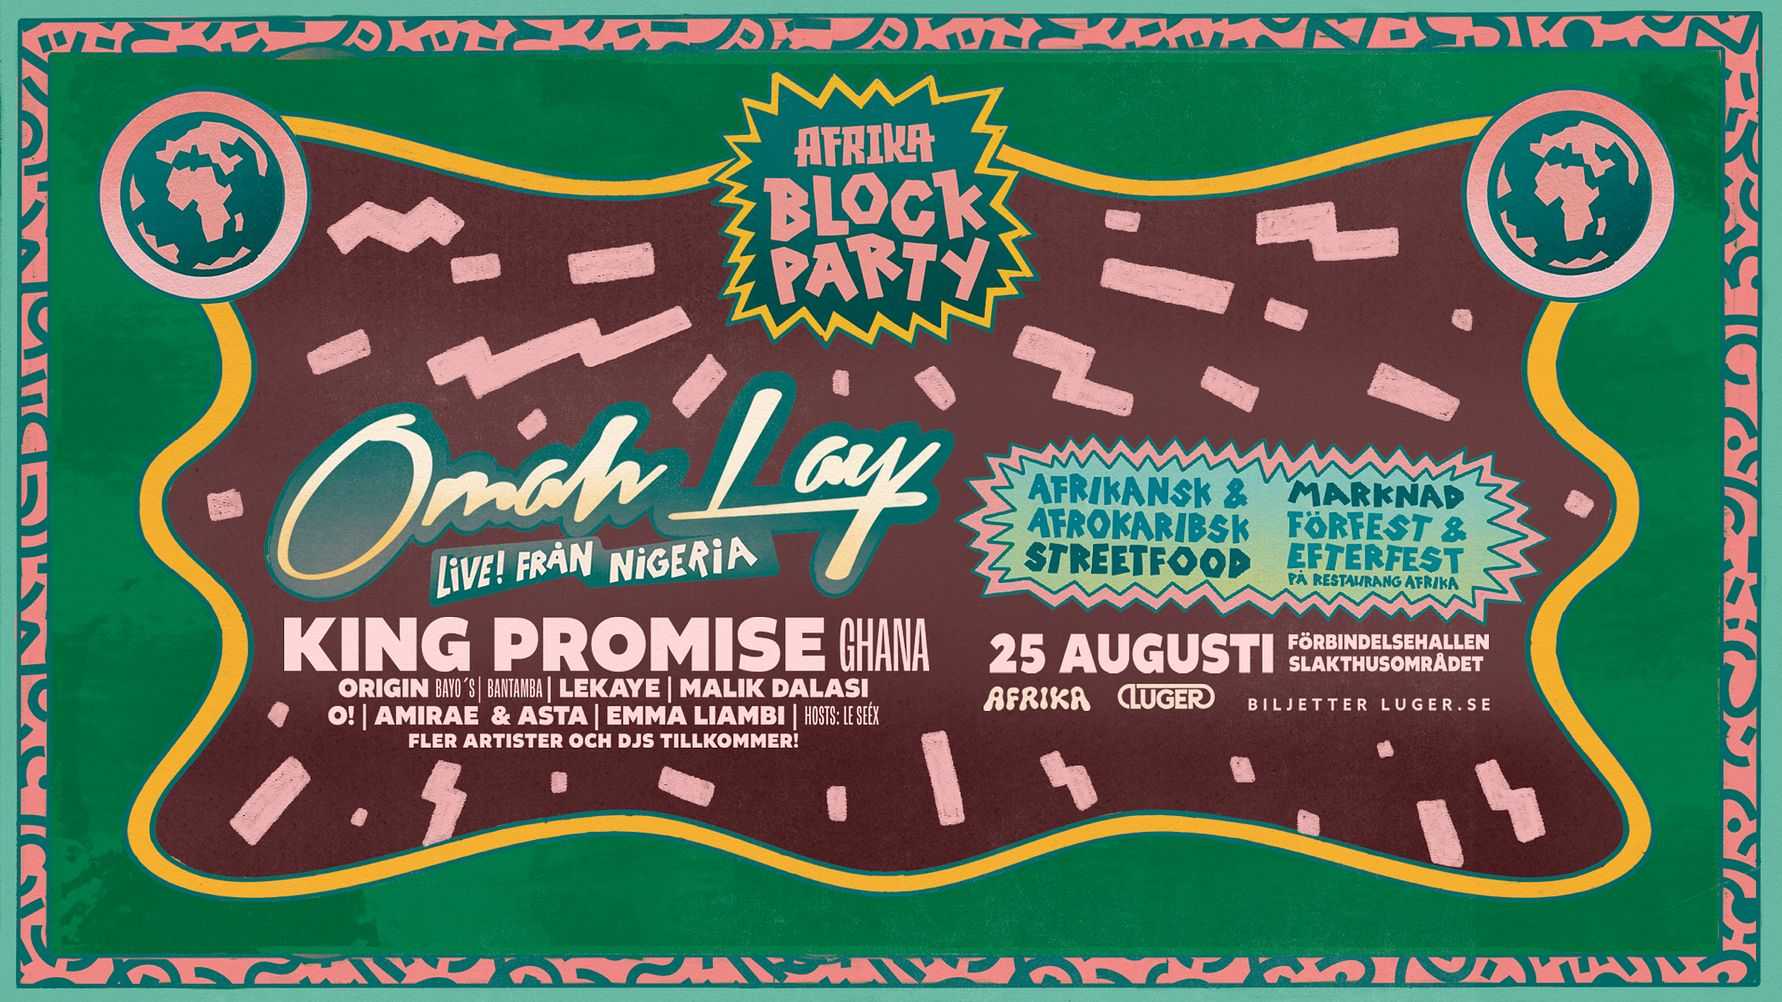 Afrika Block Party intar Förbindelsehallen med Omah Lay [NG] och King Promise [GH] i augusti!